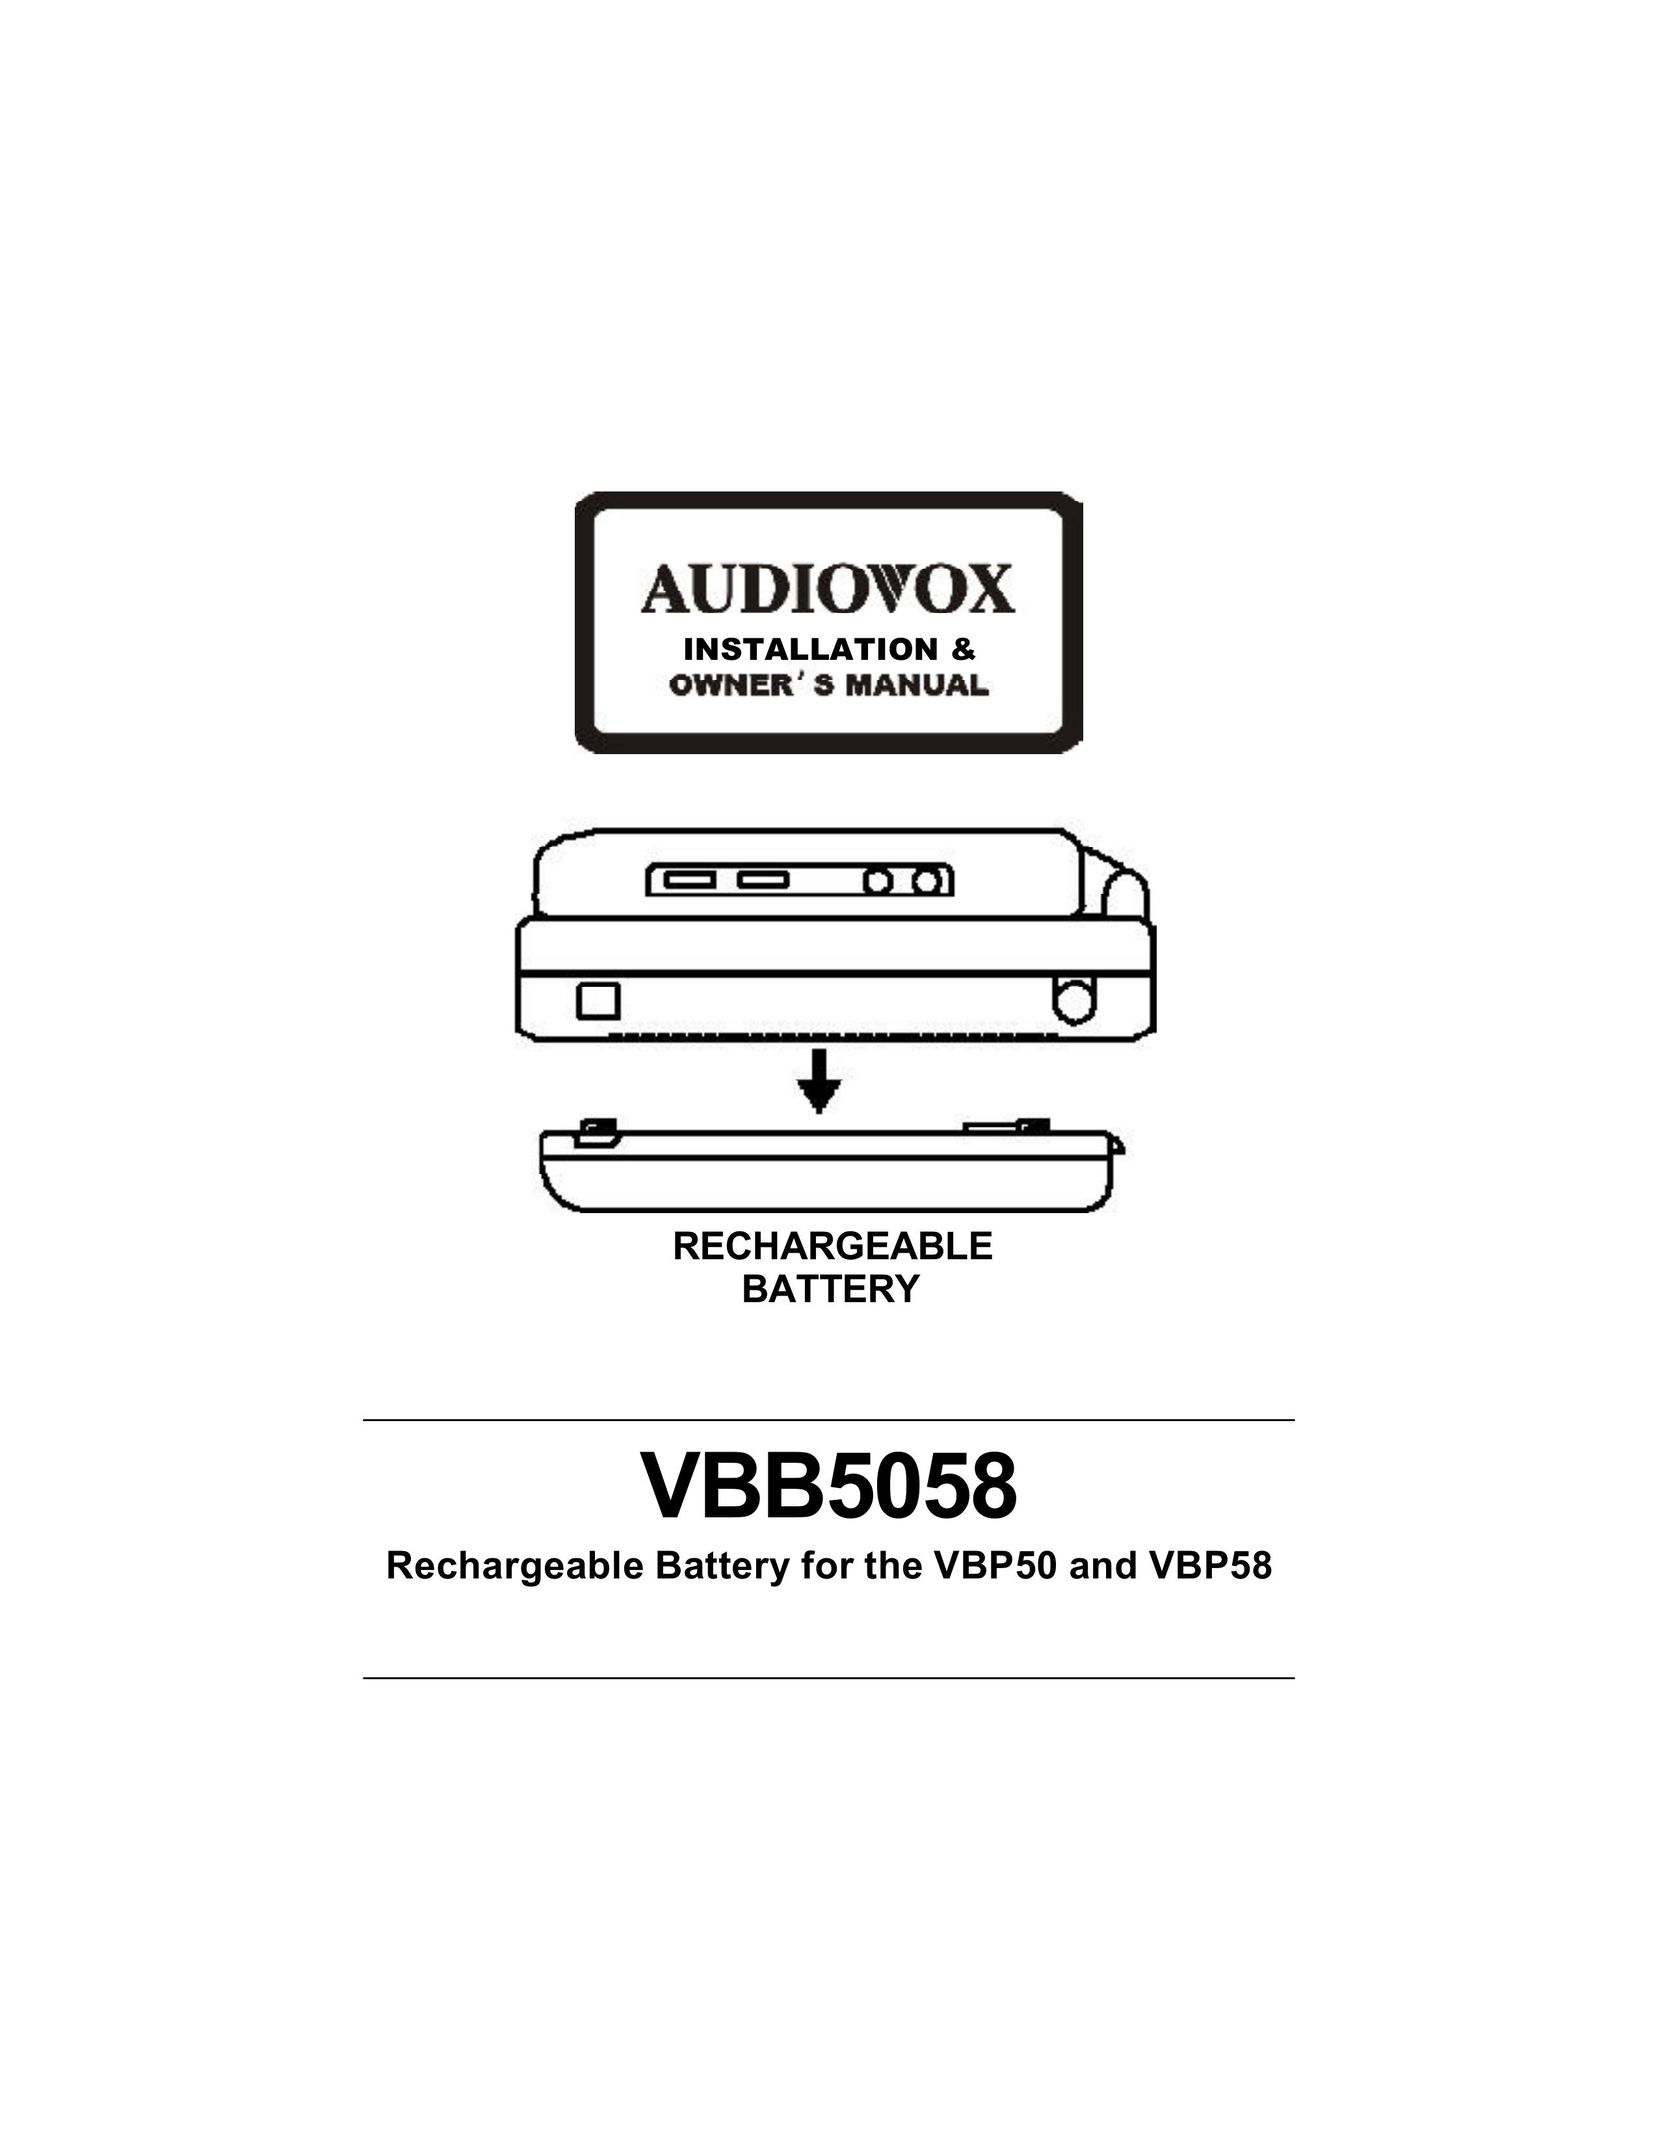 Audiovox VBB5058 Power Supply User Manual